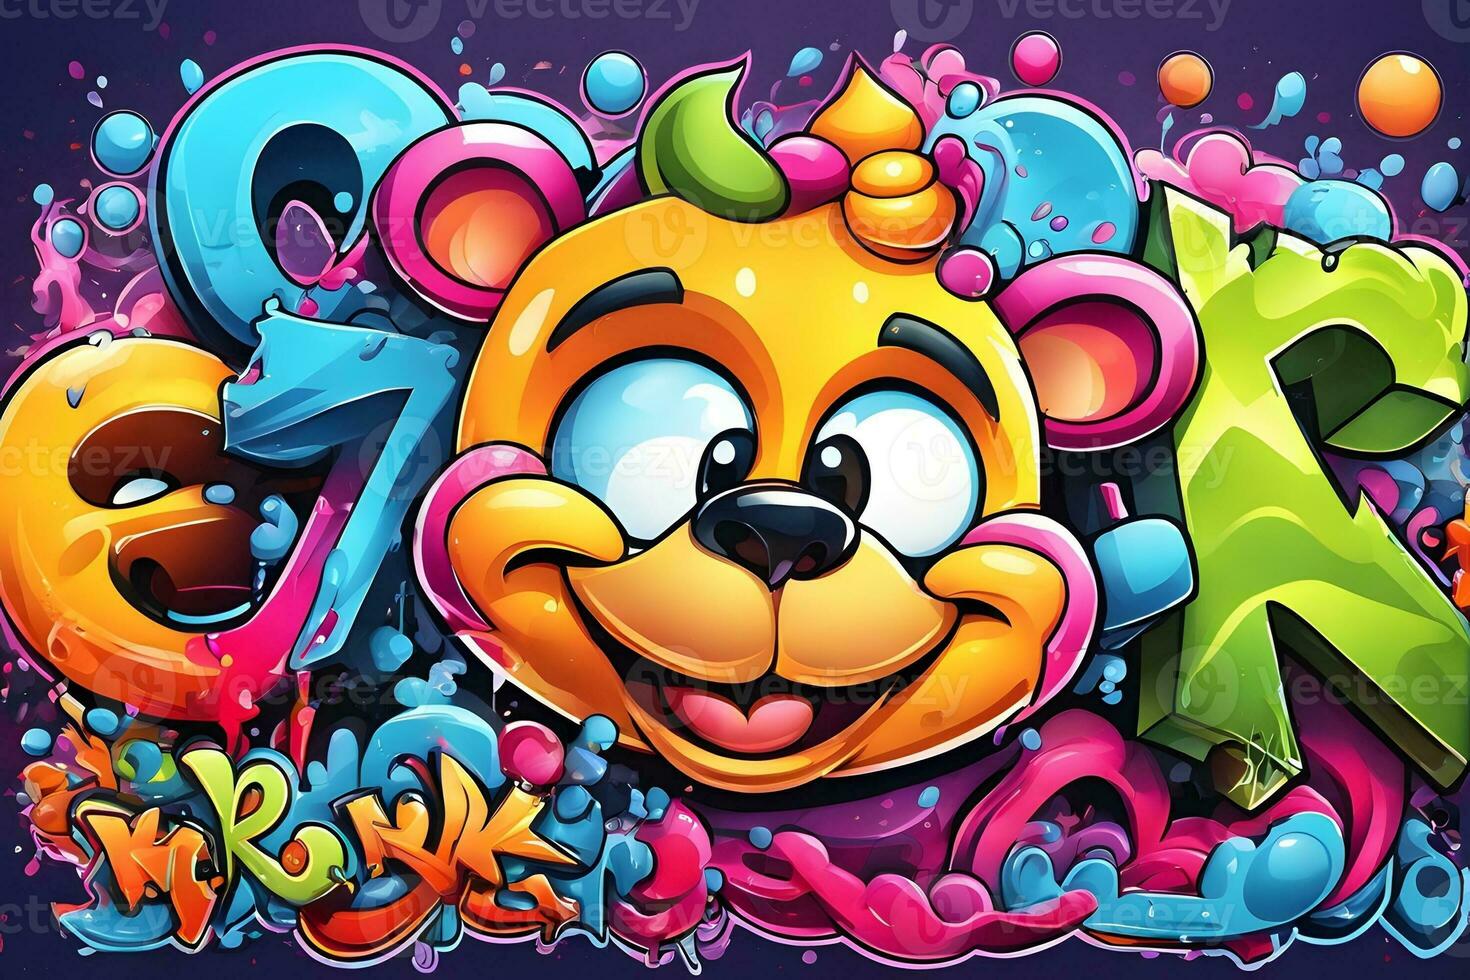 Cartoon Graffiti Wallpaper, Cartoon Graffiti Background, Cartoon Graffiti Pattern, Cartoon Character Graffiti background, Cartoon Character Graffiti Art, Graffiti Background, AI Generative photo